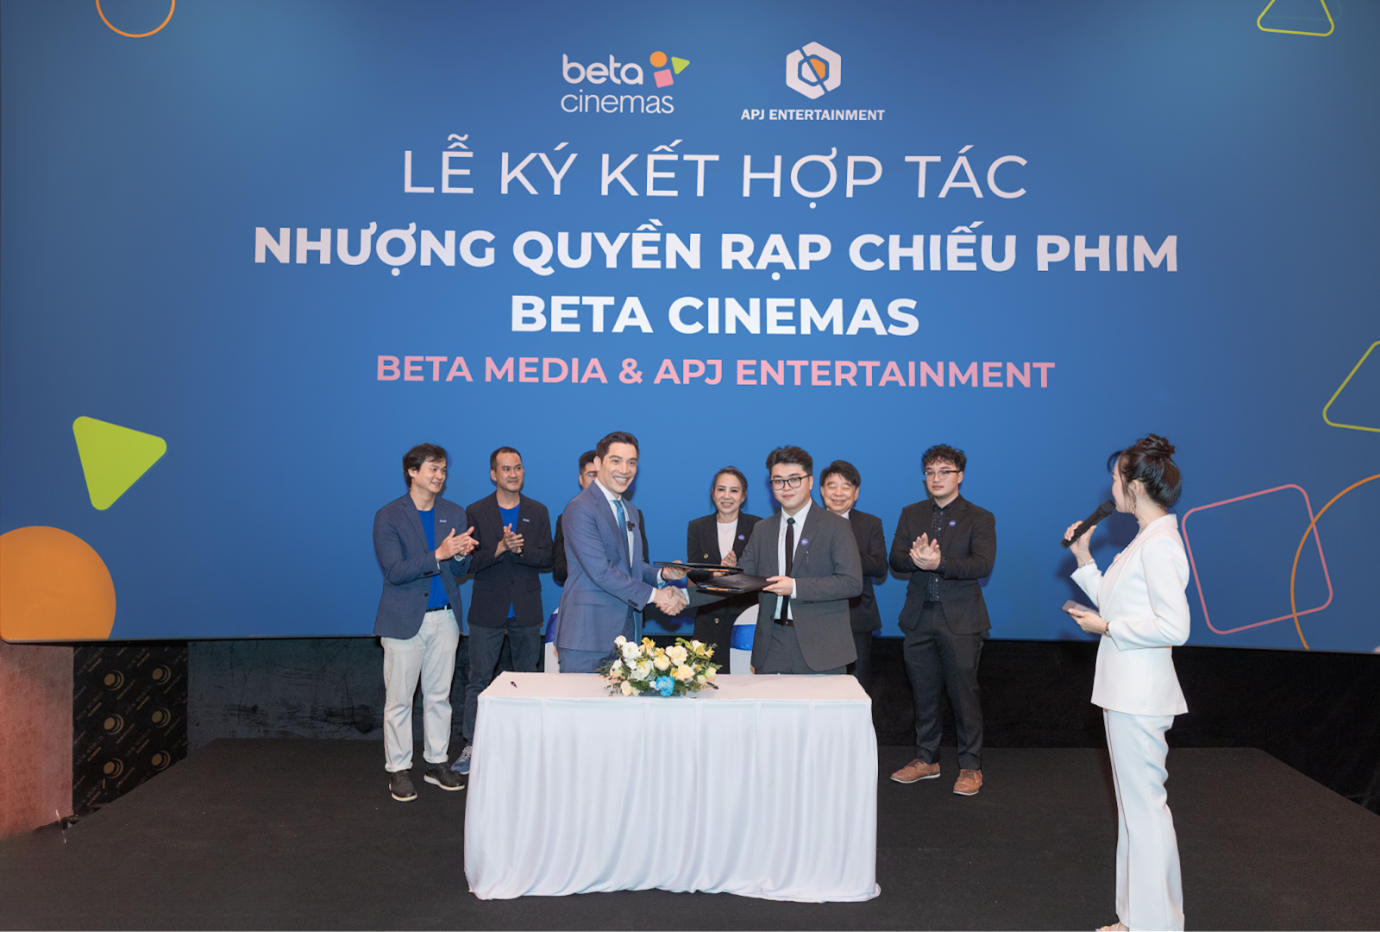 Xã hội - Shark Minh Beta ký kết nhượng quyền “Rạp chiếu phim triệu like”, nâng tổng số lên 19 cụm rạp Beta Cinemas